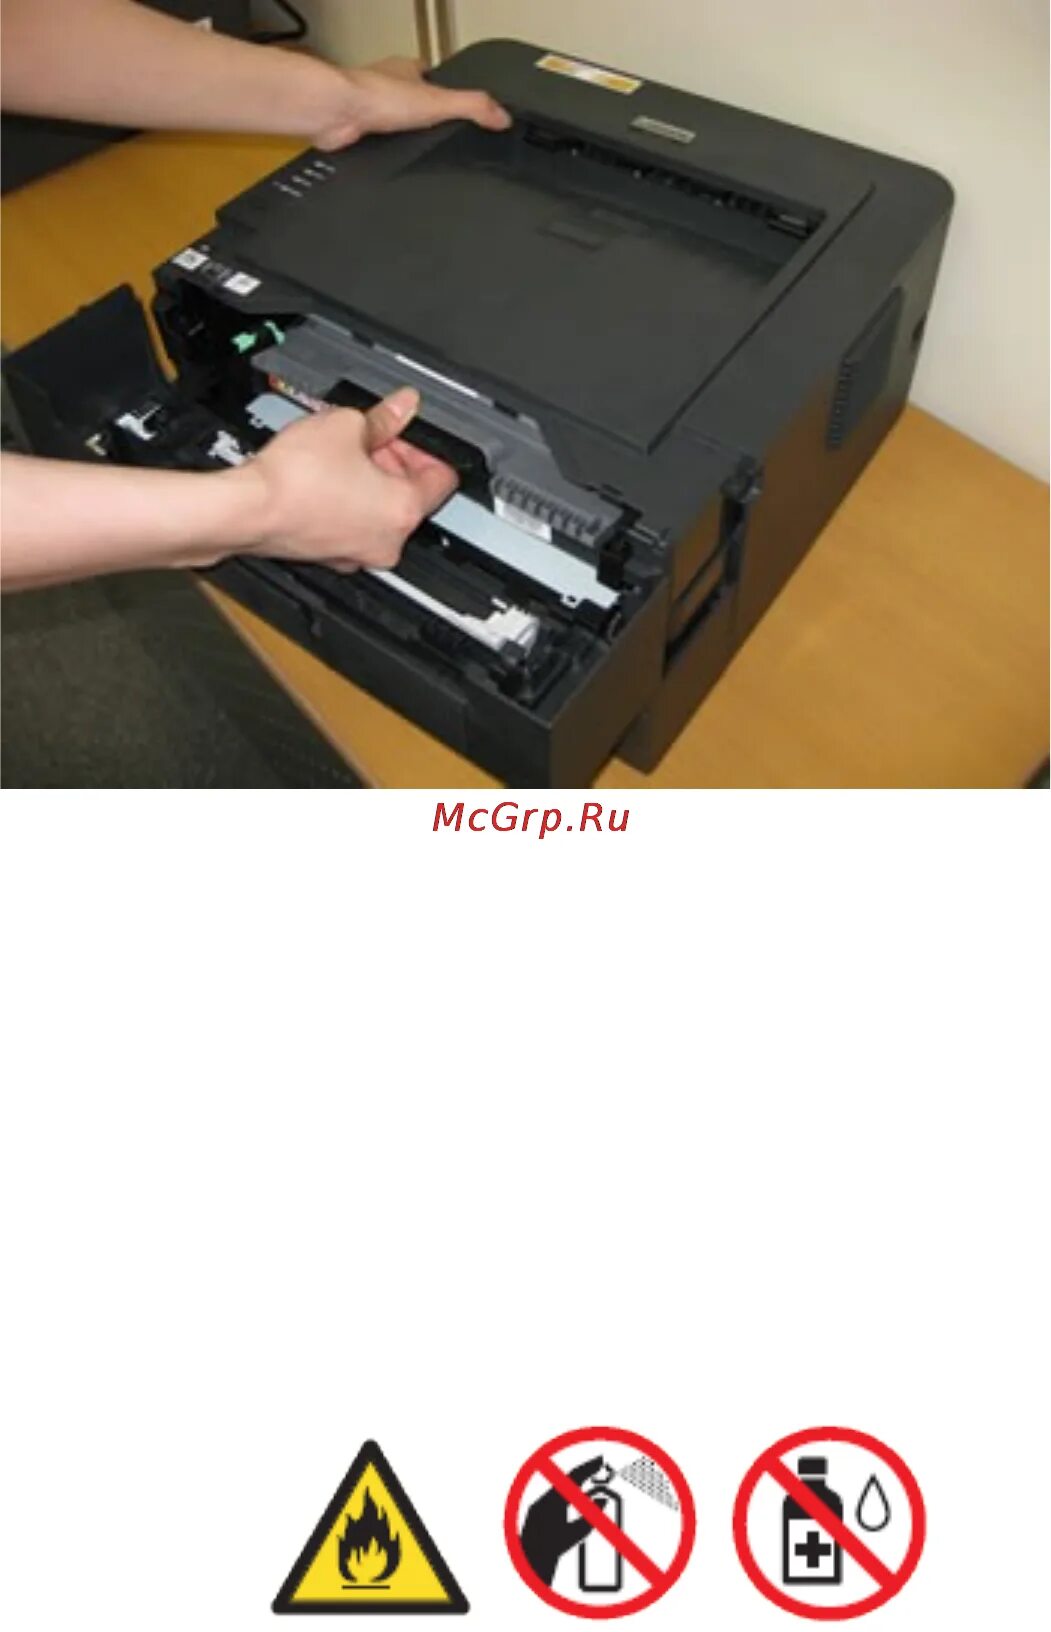 Принтер Бразер 2132. Картридж brother hl-l23400wr. Принтер маркировочный для кабеля brother hl-2130. DCP-7060 сканер в сборе.